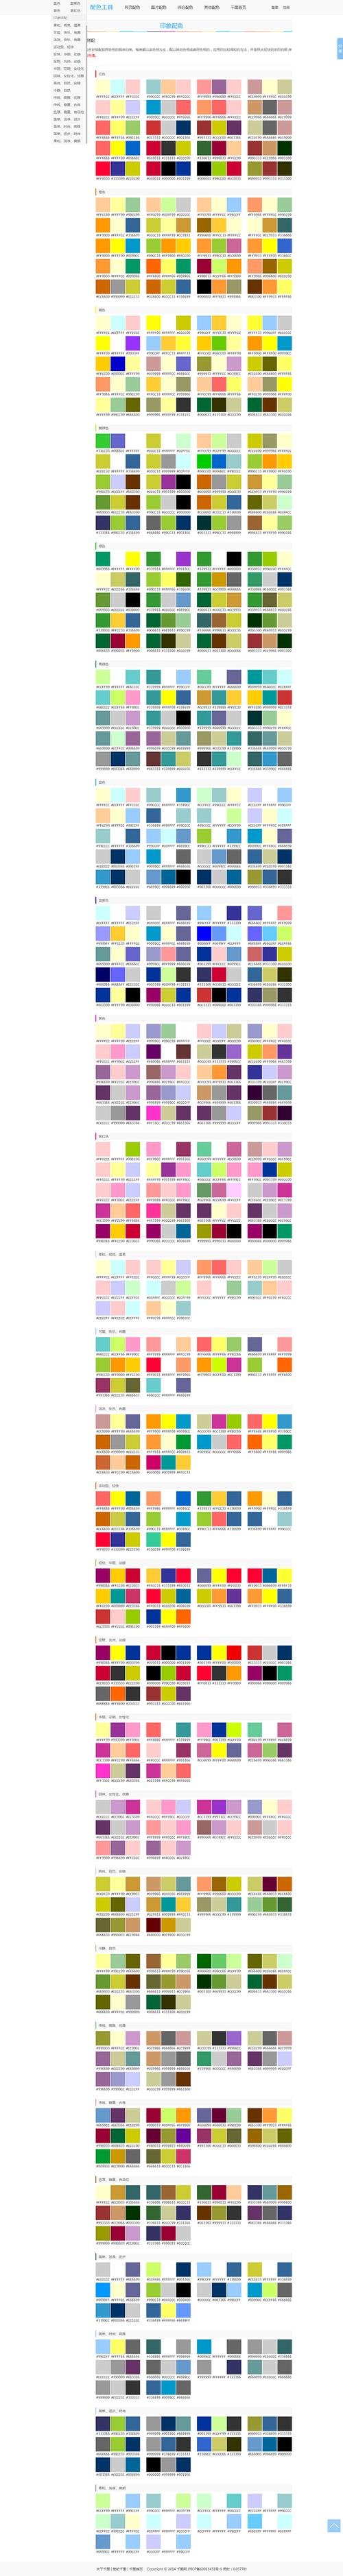 配色表-设计师最常用的色彩搭配方案-千图网www.58pic.com